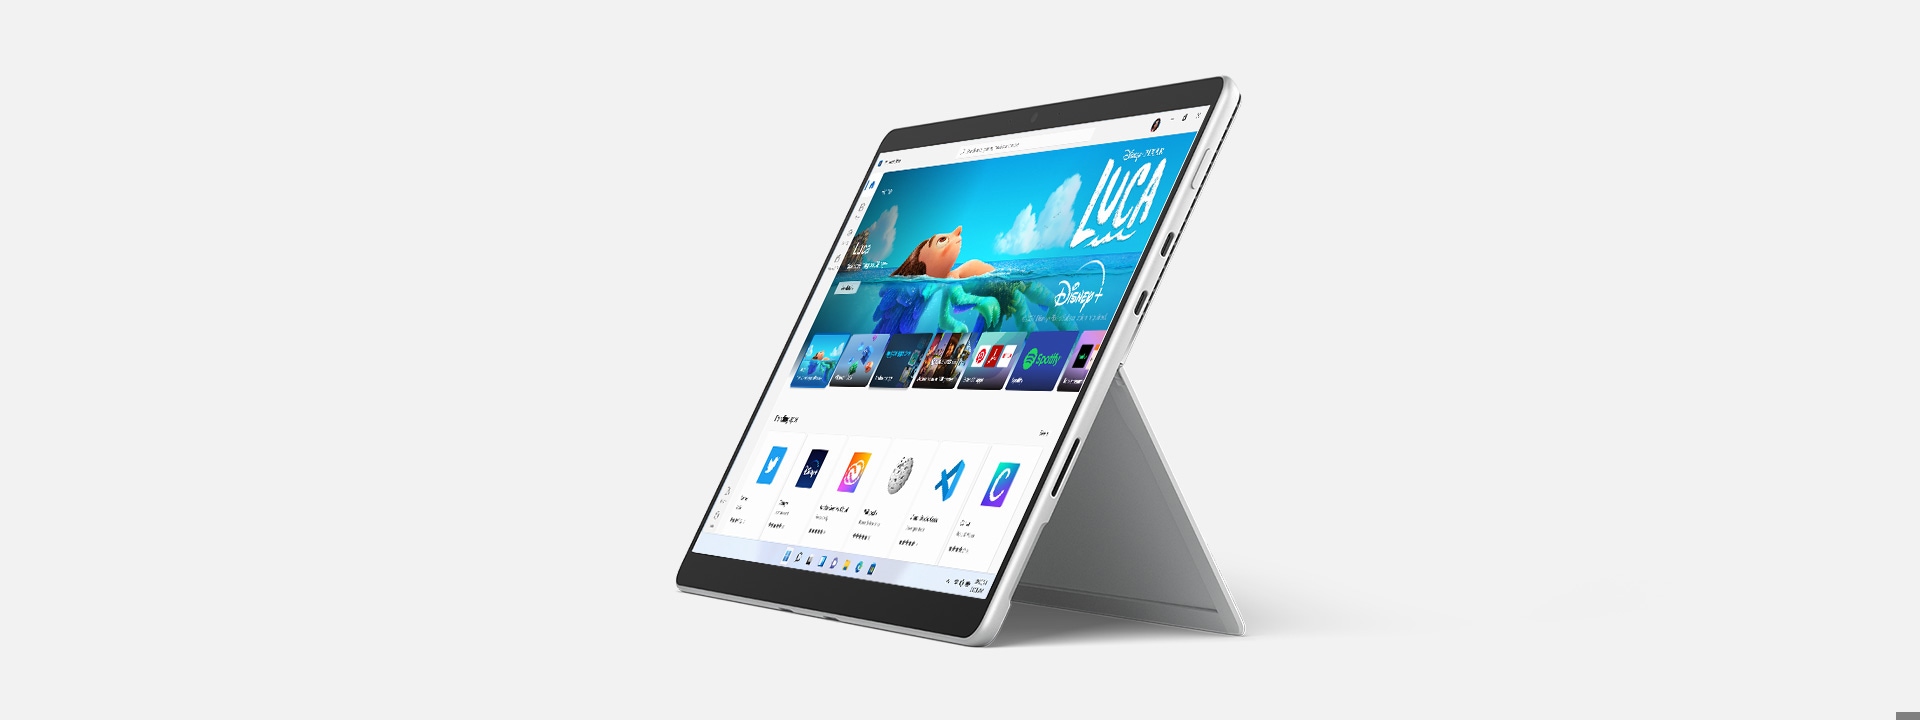 Apps destacadas en Surface Pro 8